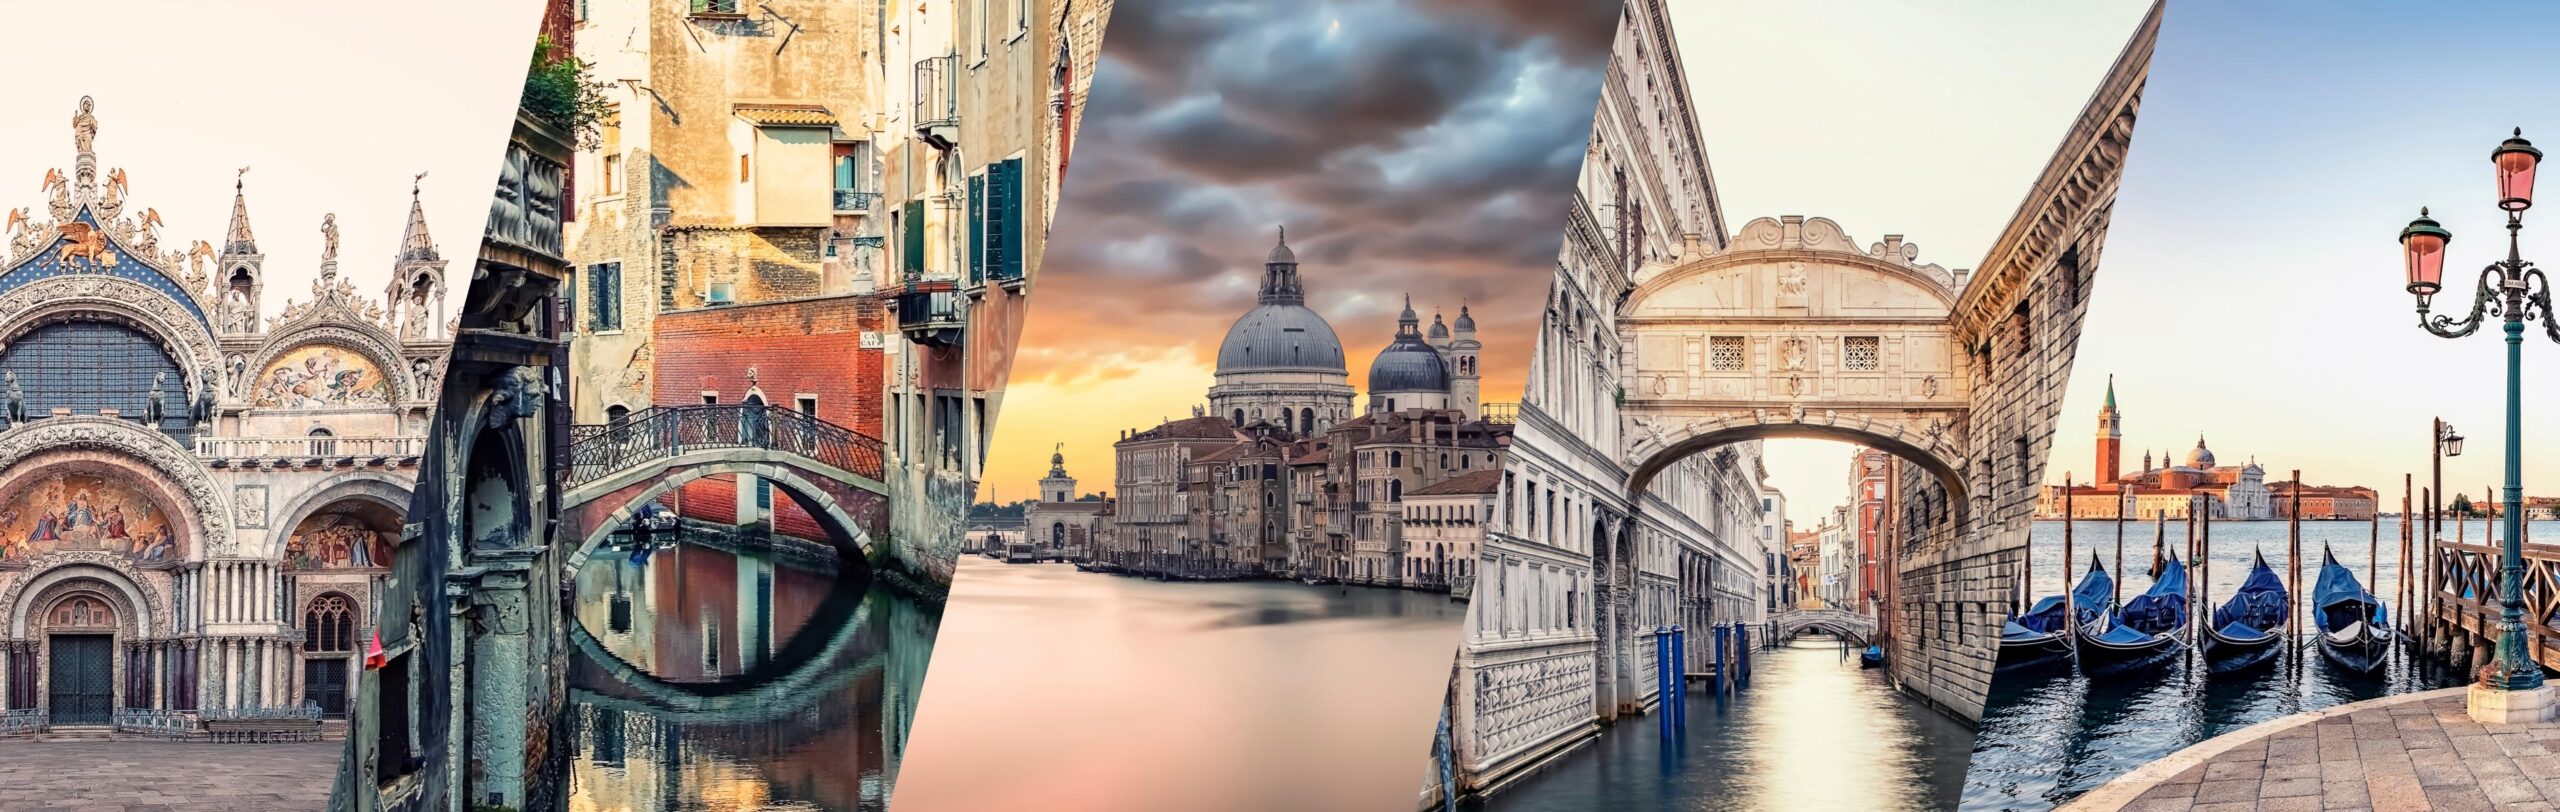 Venedig, Markusdom, Canal Grande, Santa Maria della Salute, Seufzerbrücke, San Giorgio Maggiore